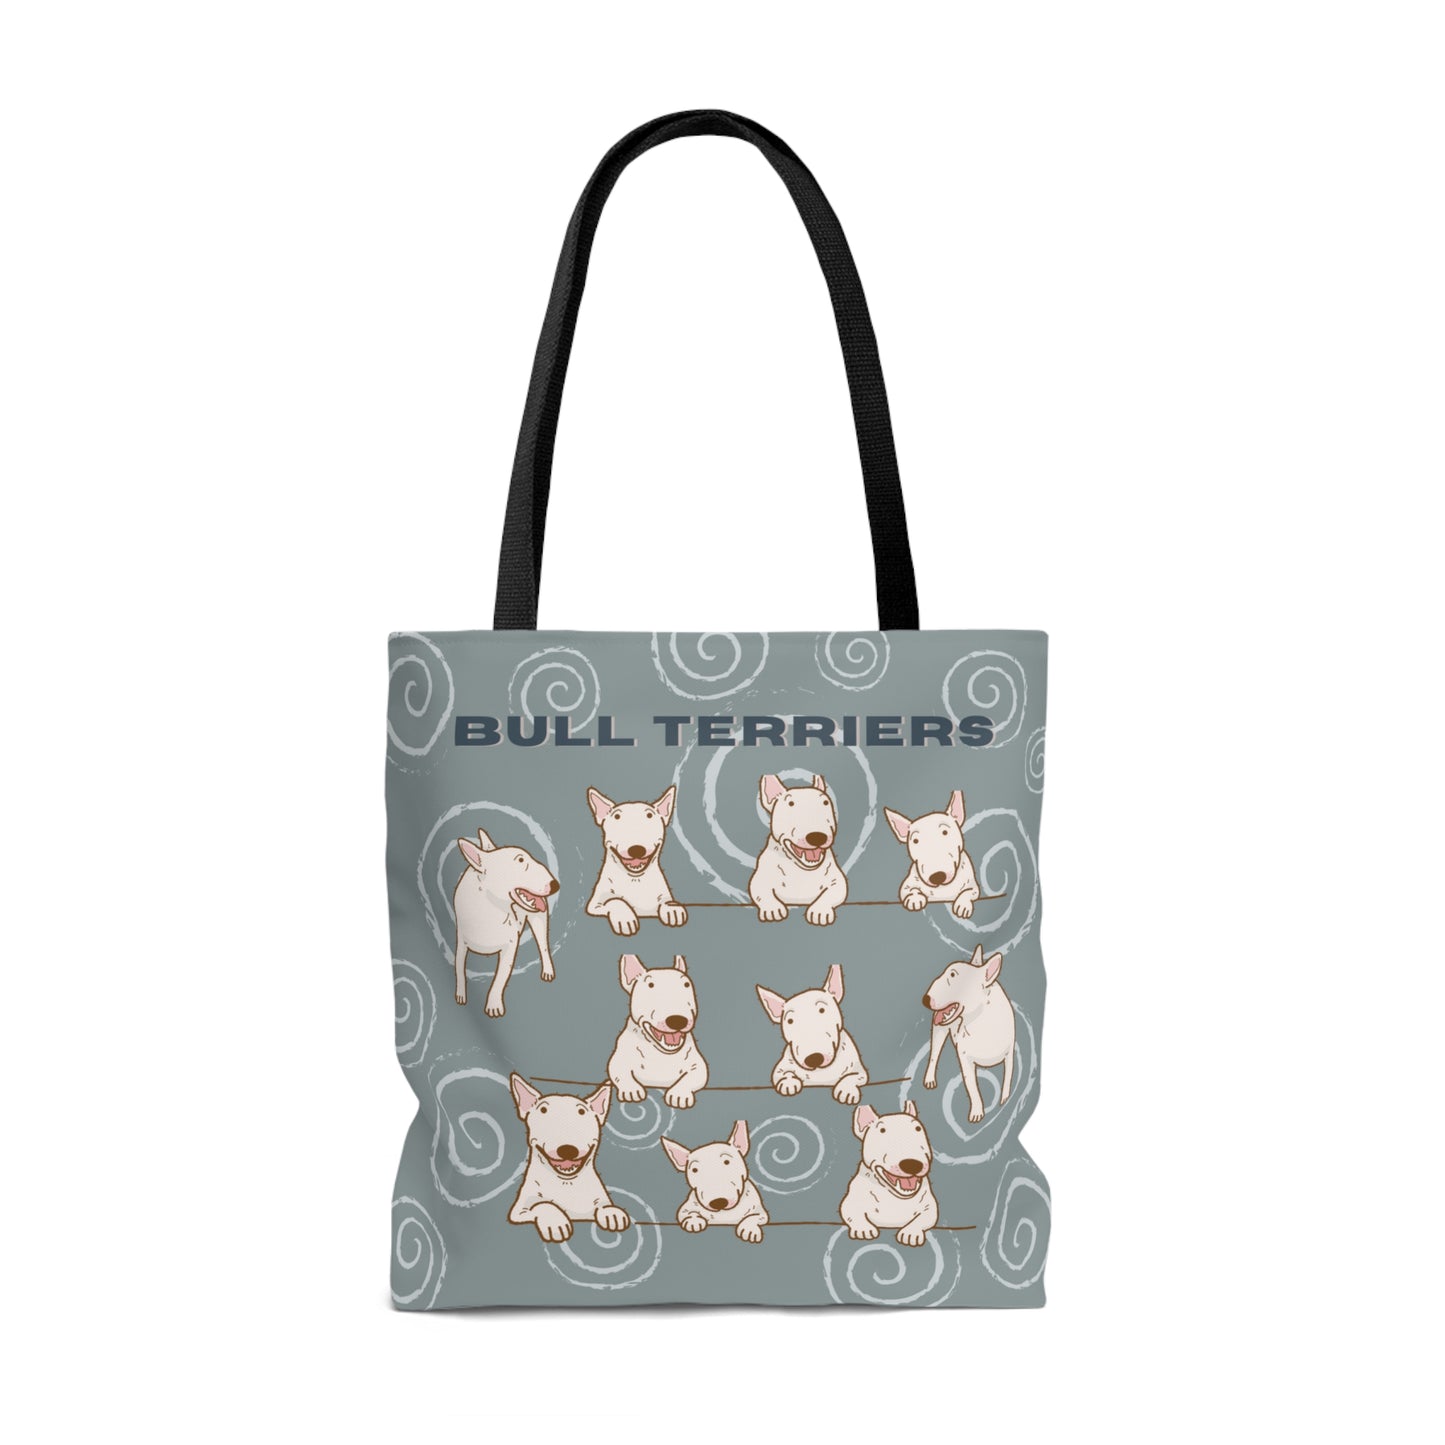 Bull Terrier Tote Bag